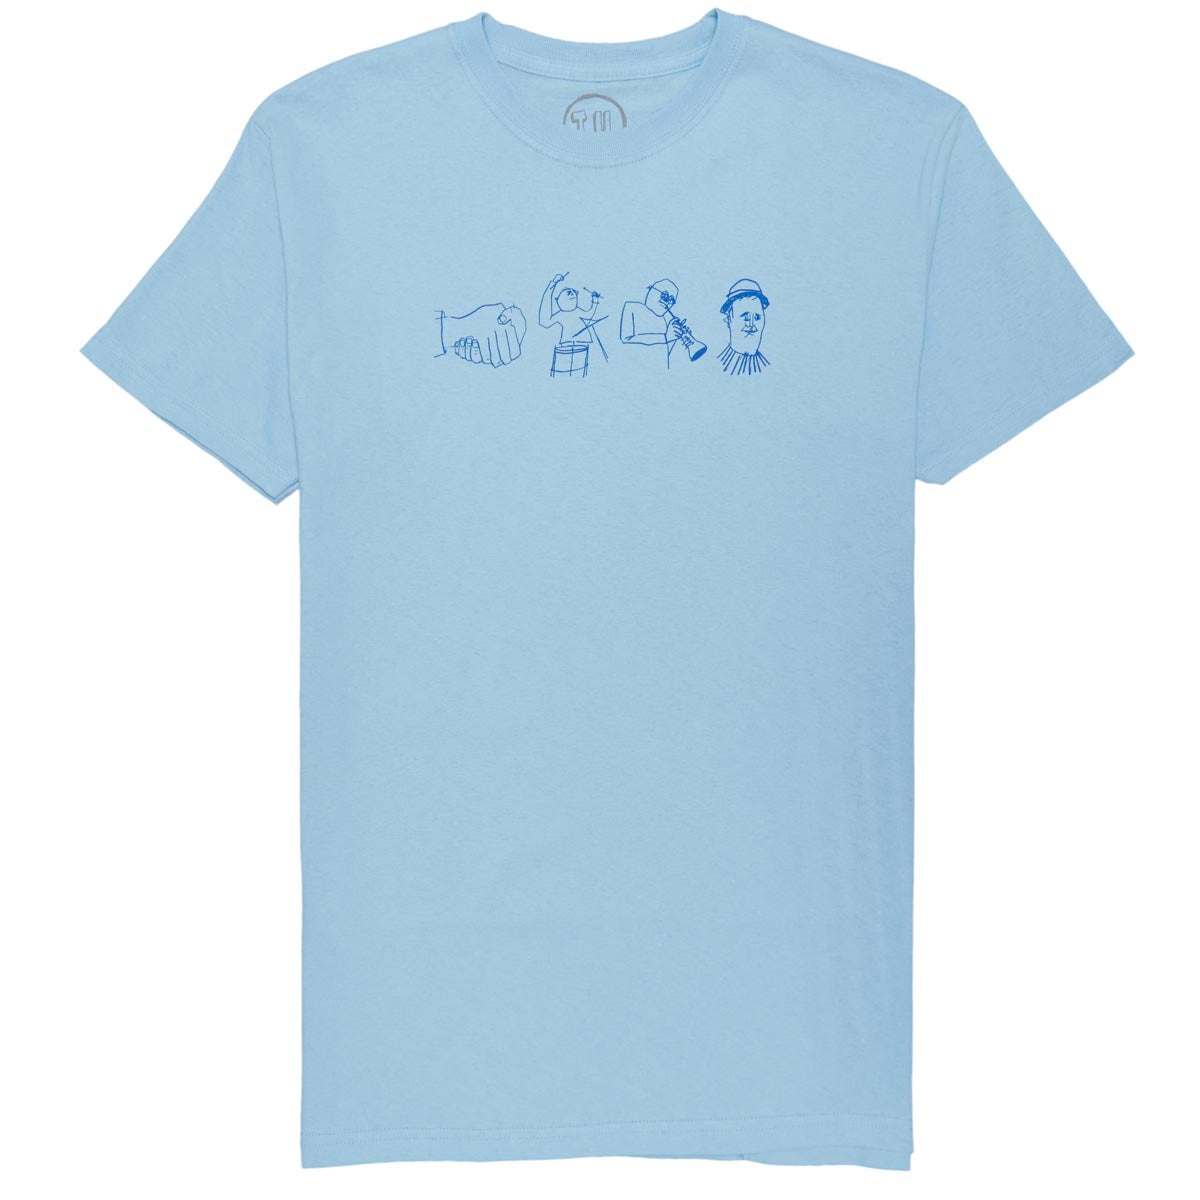 Transportation Unit Jazz Heads T-Shirt - Baby Blue image 1